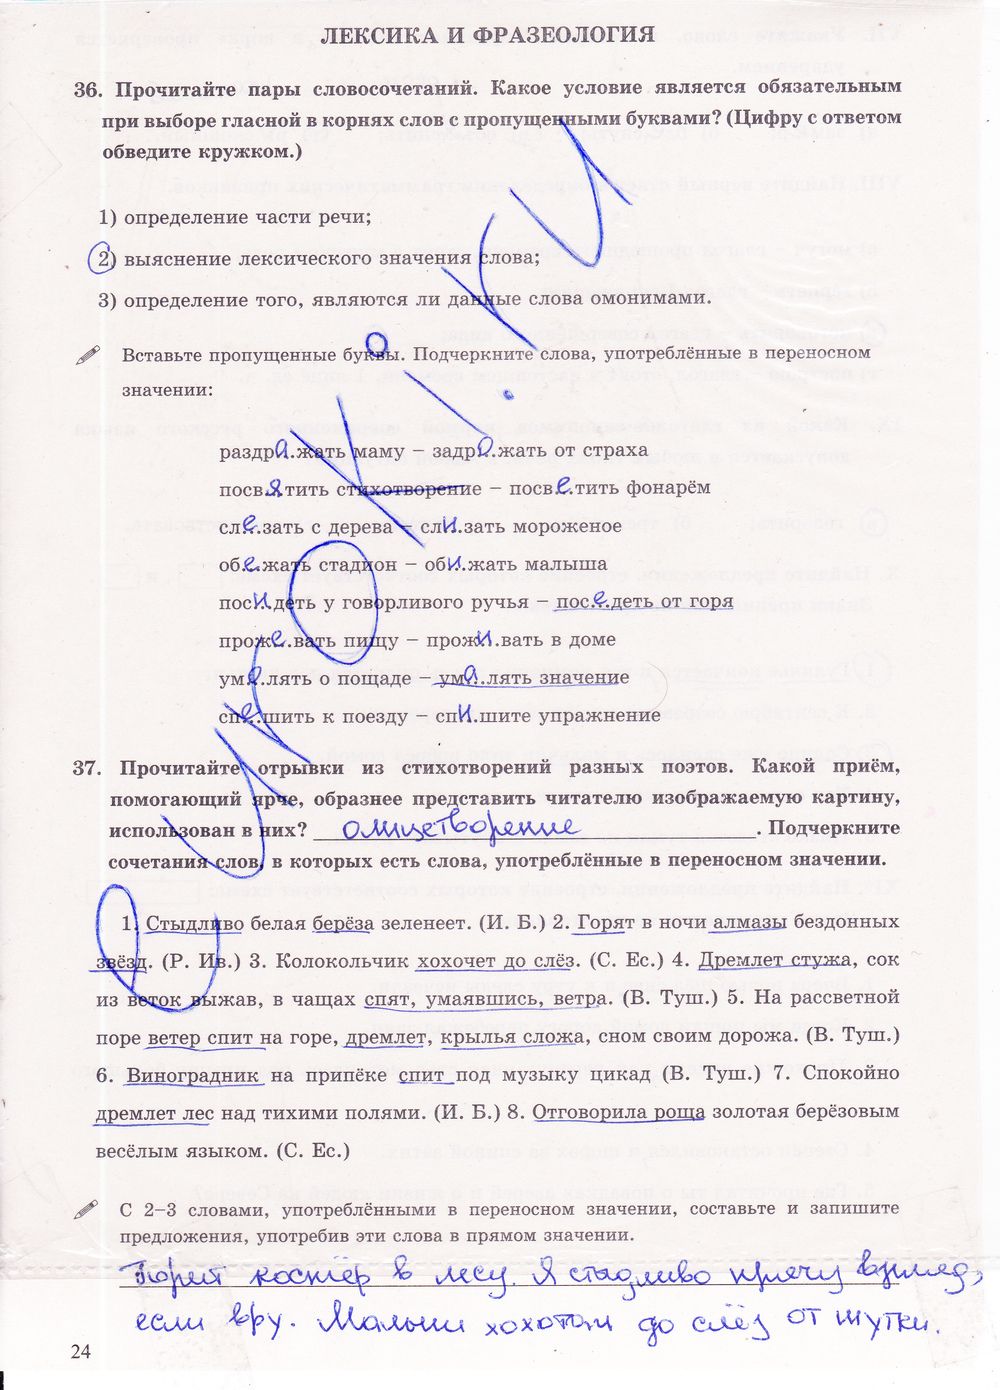 ГДЗ Русский язык 6 класс - стр. 24